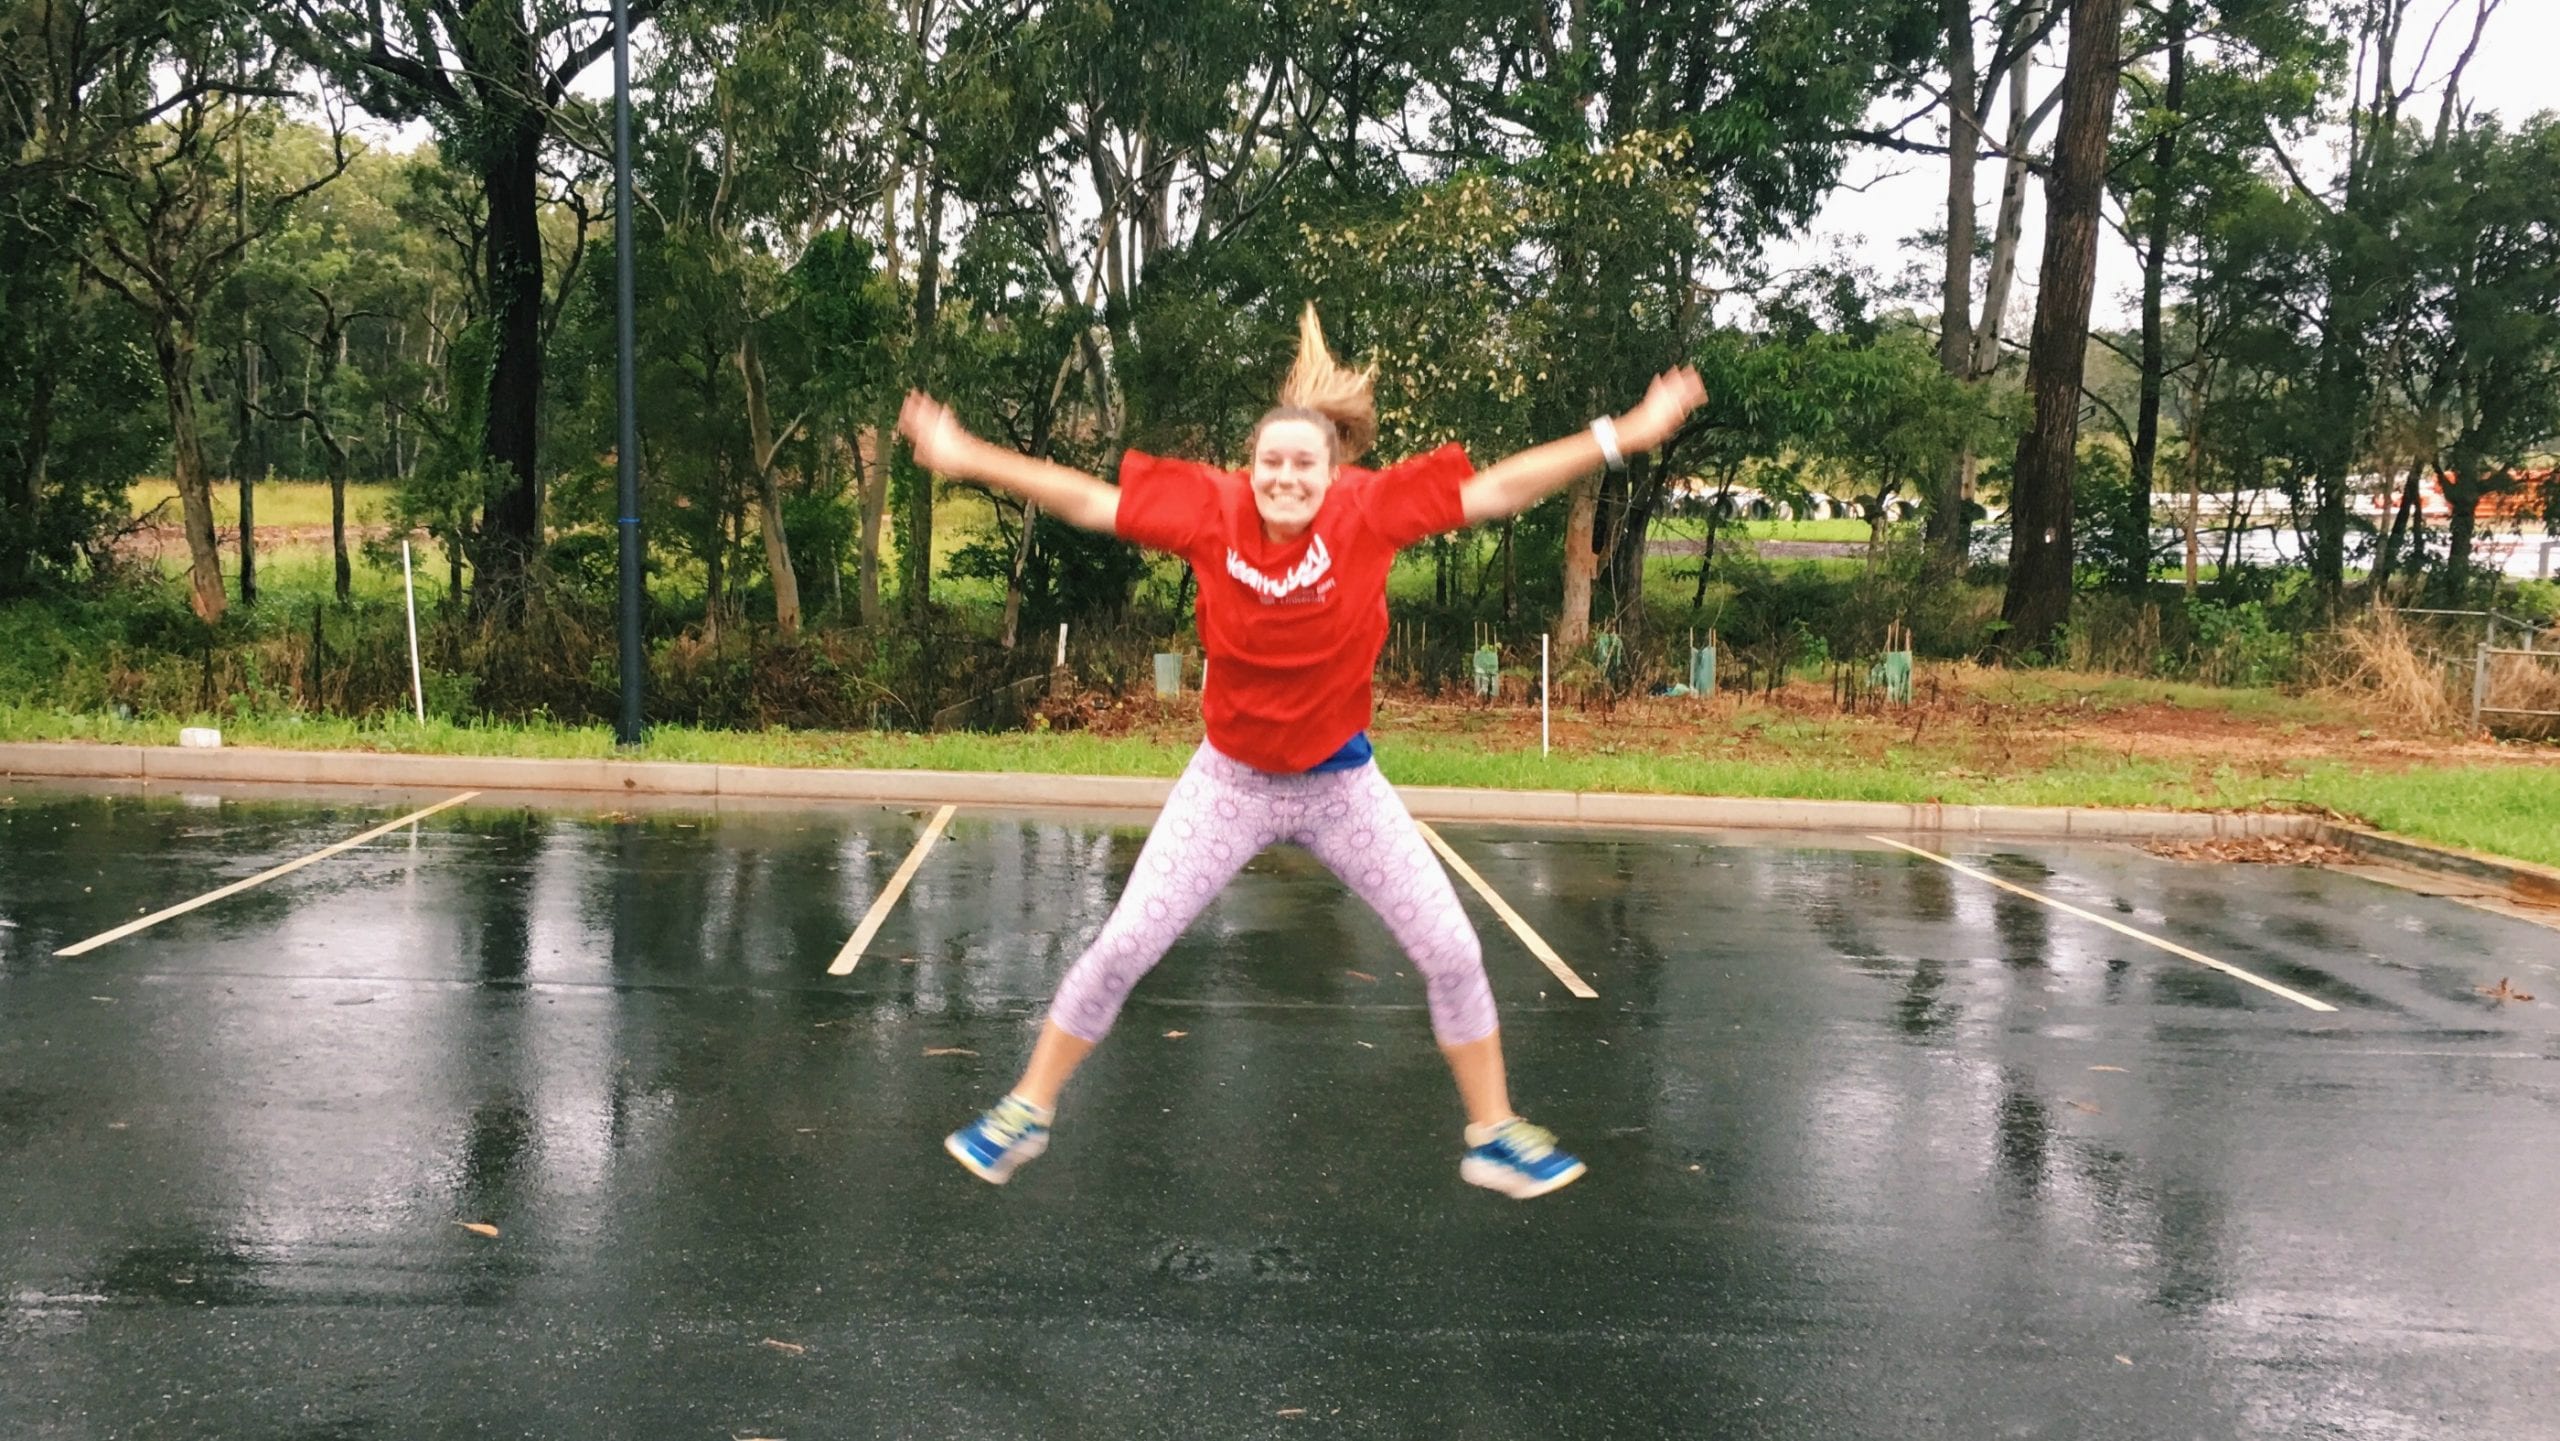 CSU Red Runner In Port Macquarie, Lauren Benson